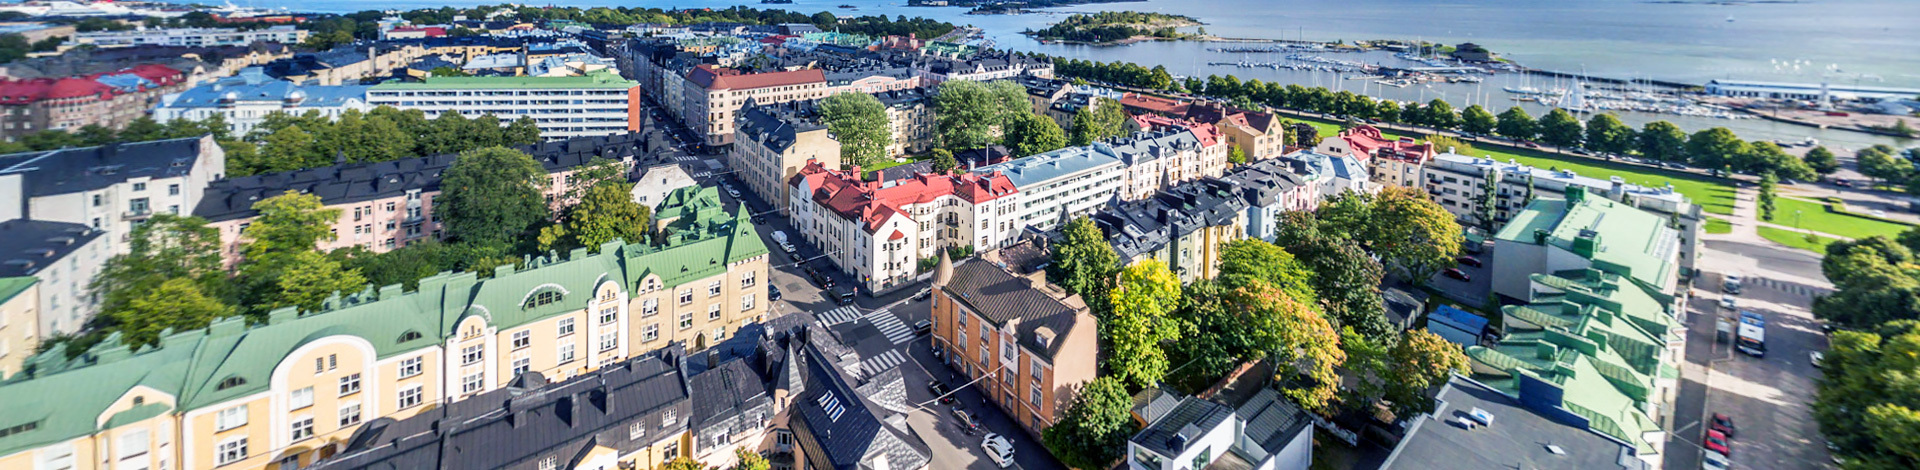 View of Ullanlinna, Helsinki